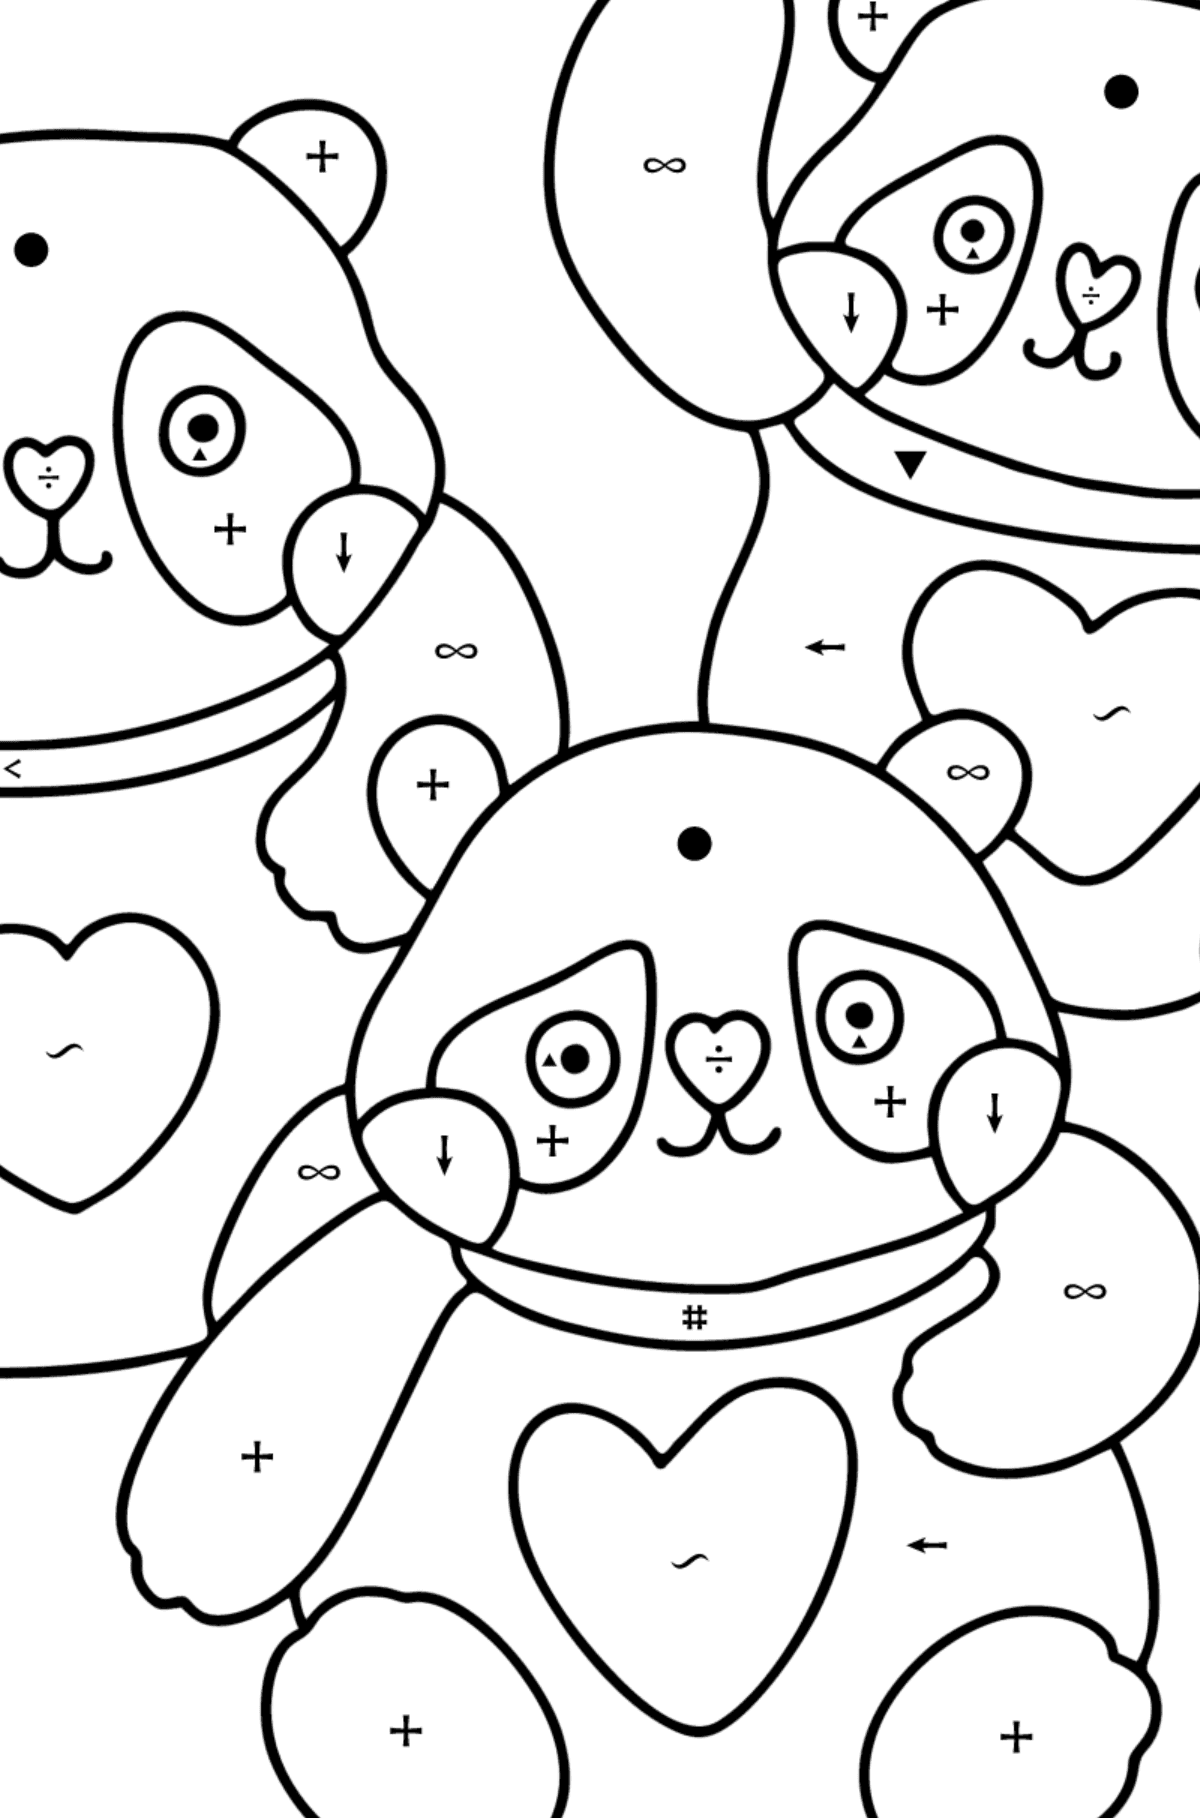 Dibujo de pandas kawaii para colorear - Colorear por Símbolos para Niños